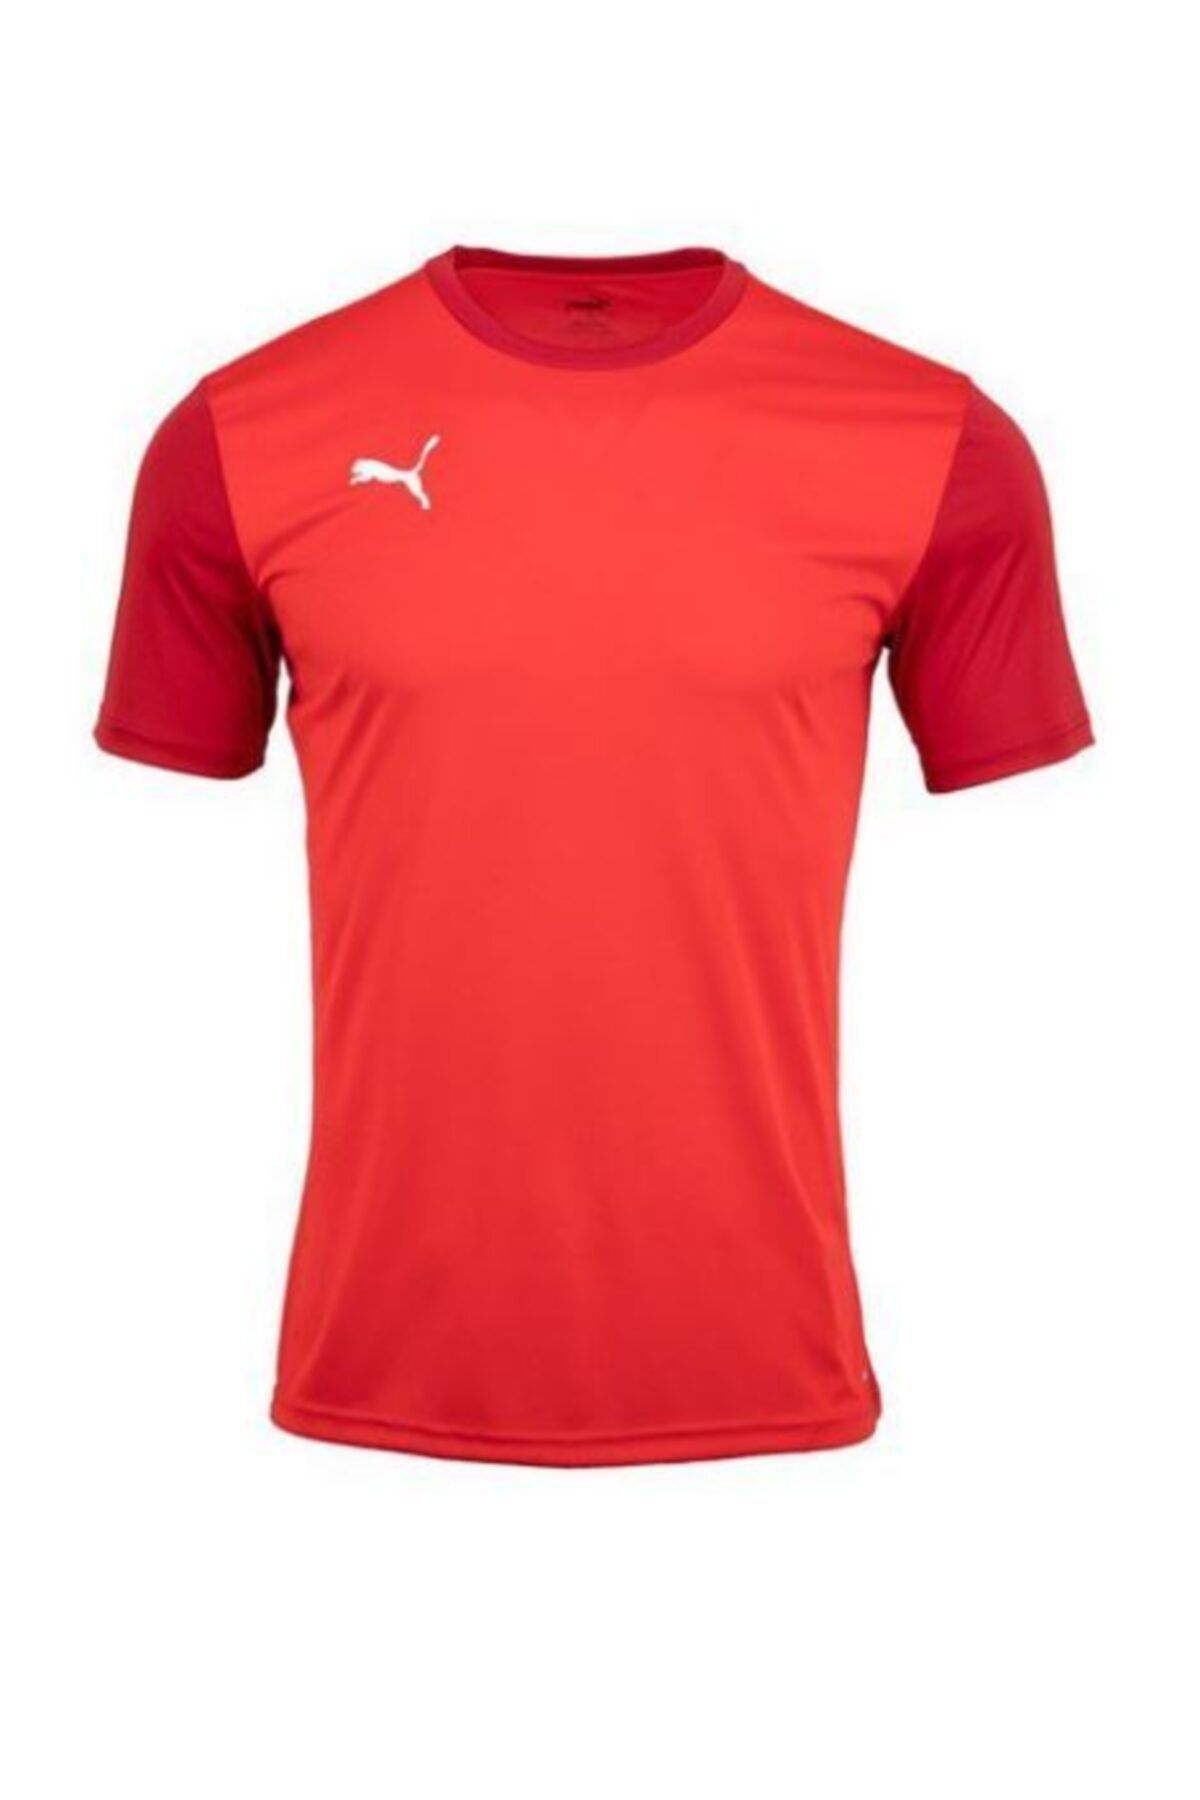 Puma T-shirts Red